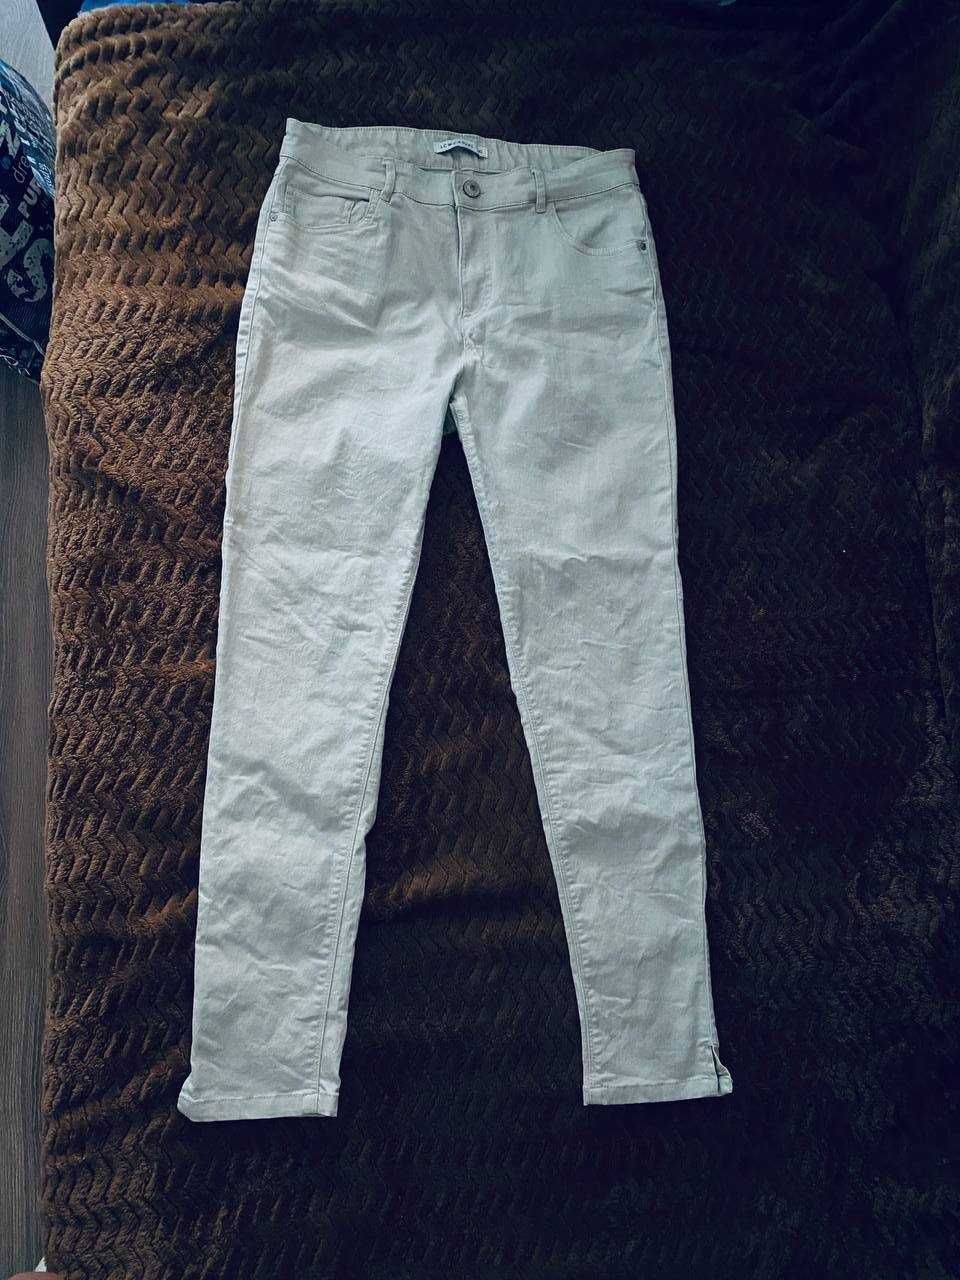 Скинни брюки джинсы облегающи высокая посадка узкие стрейч тянутся беж